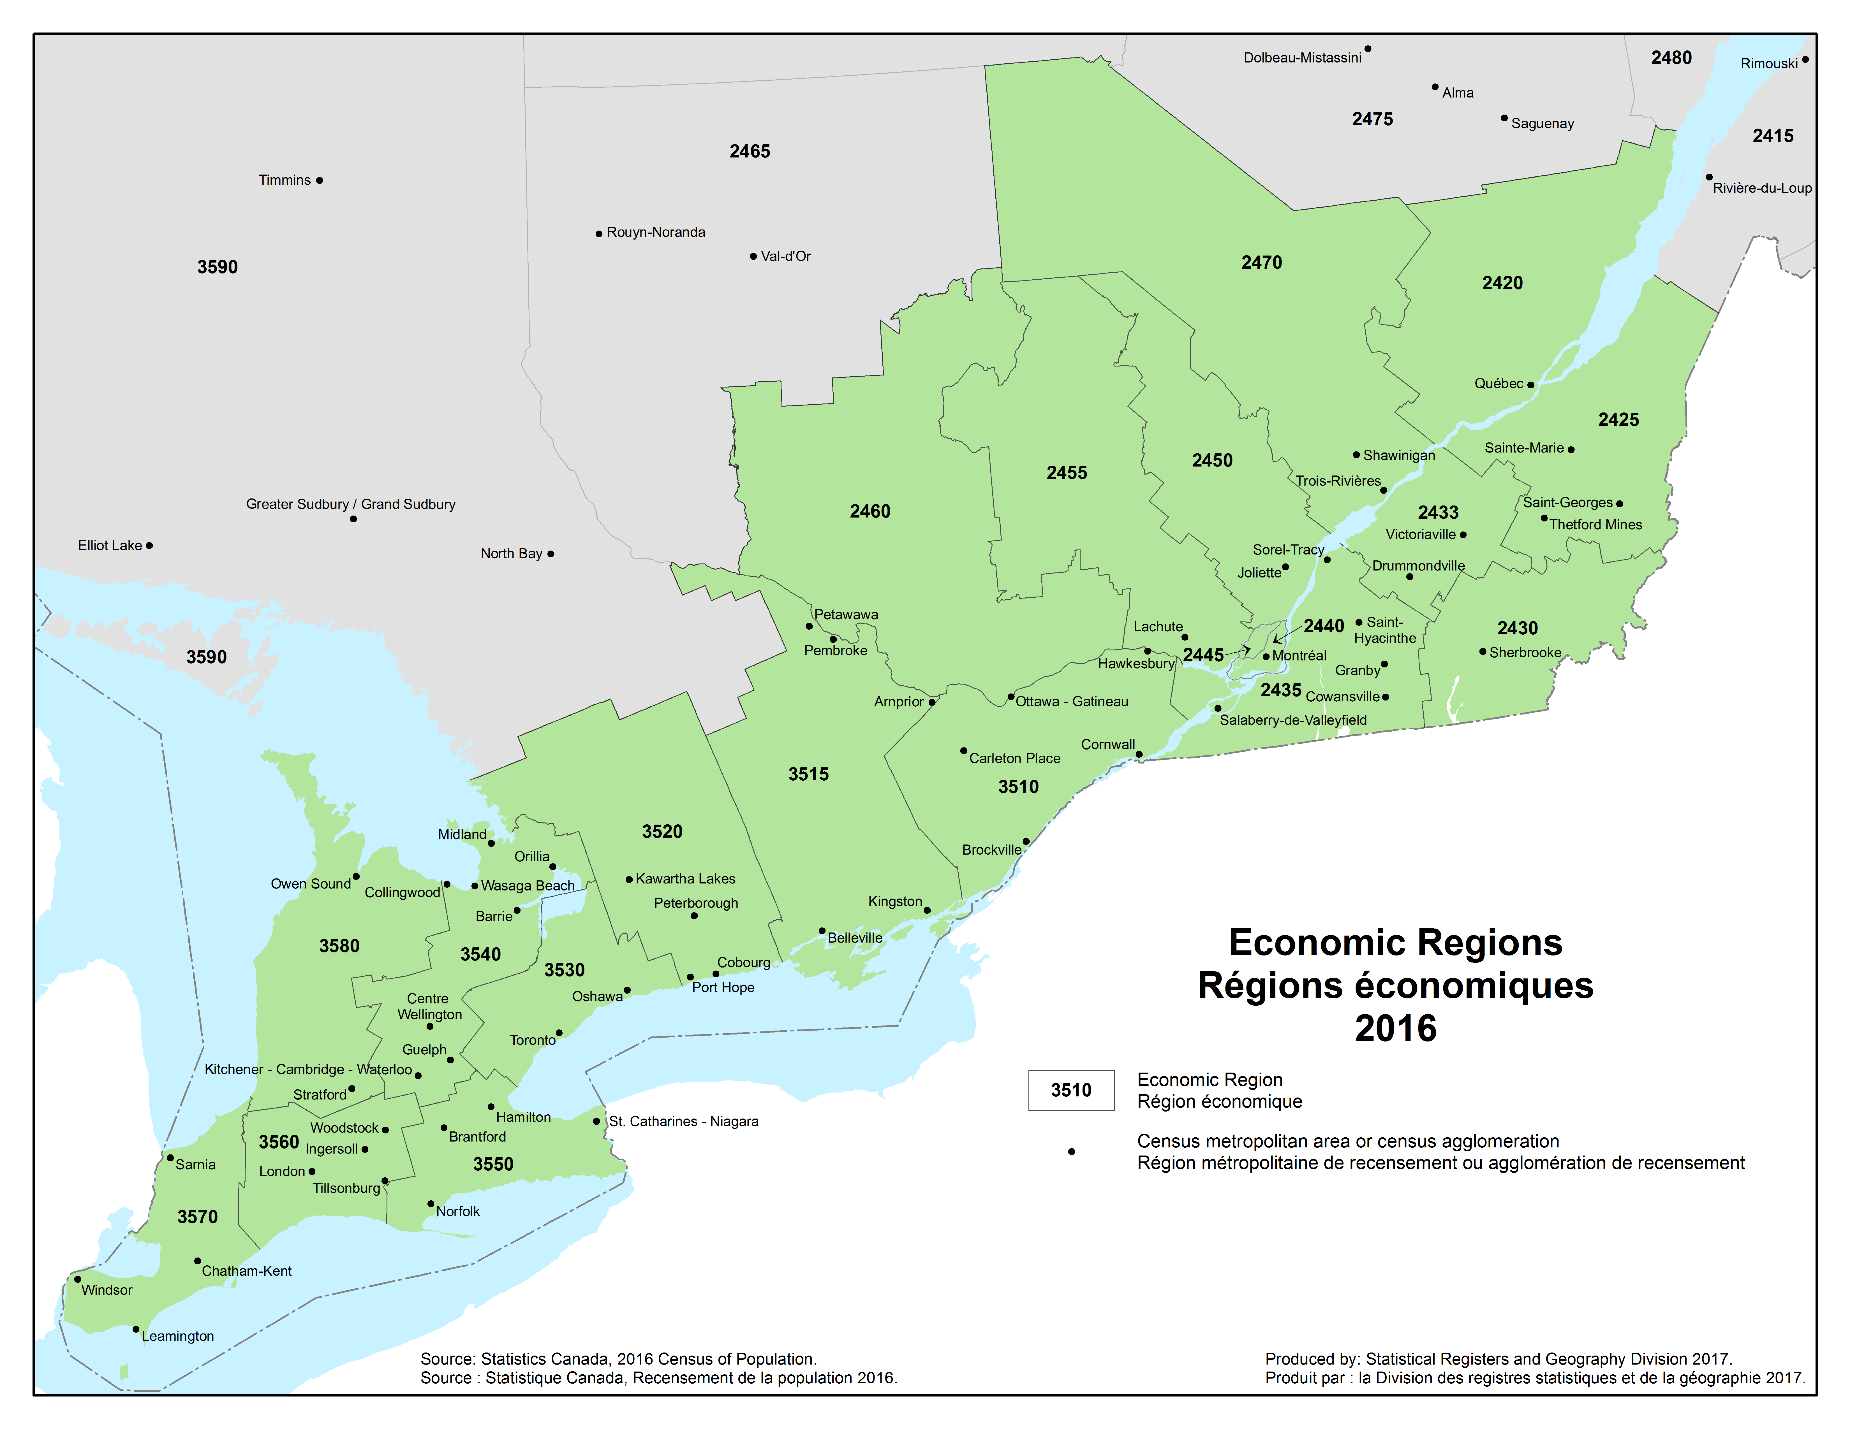 Eastern economic regions, régions économiques de l'Est - 2016